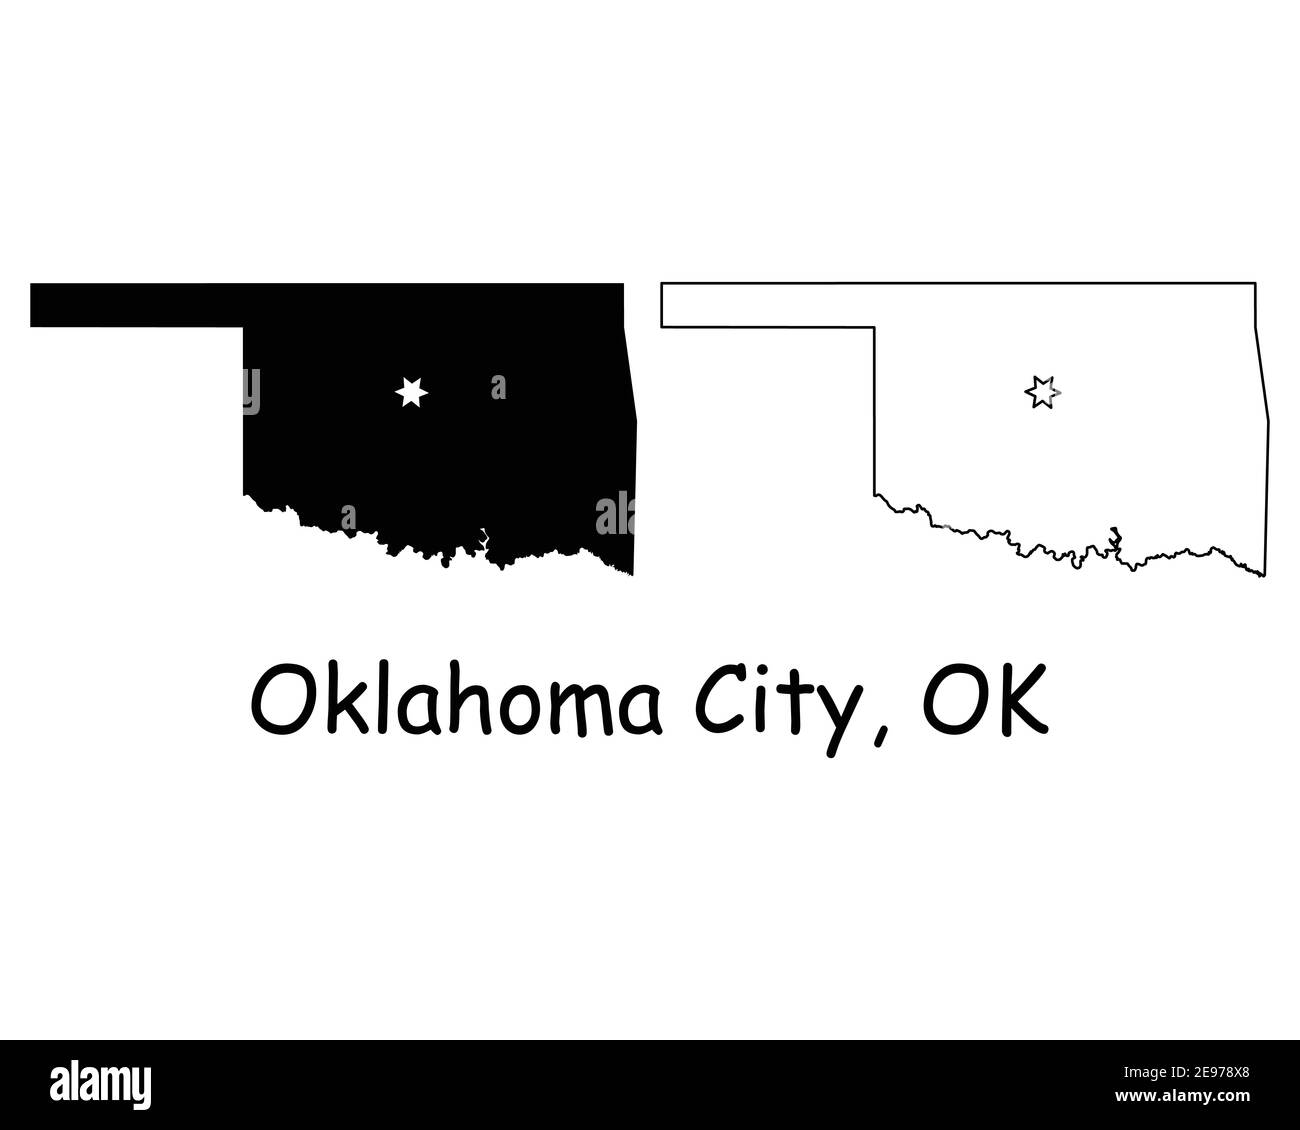 Oklahoma OK State Map USA mit Capital City Star in Oklahoma City. Schwarze Silhouette und Umriss isoliert auf weißem Hintergrund. EPS-Vektor Stock Vektor